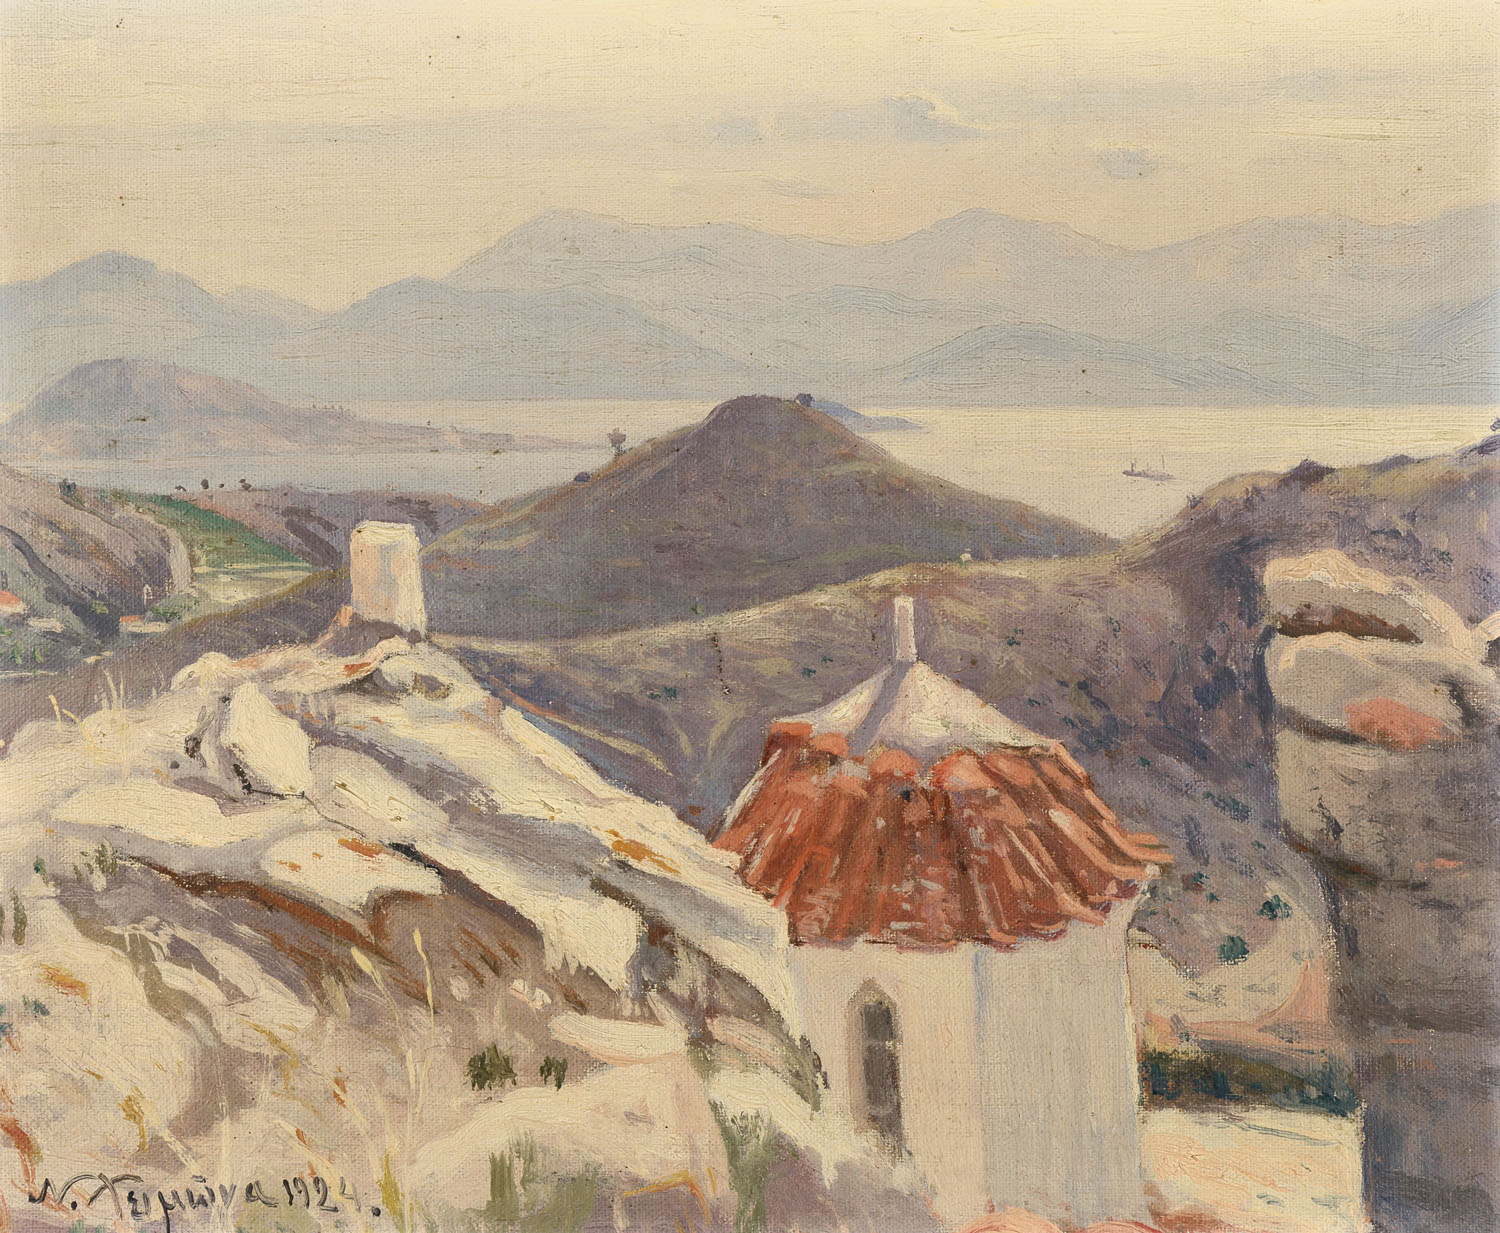 ΧΕΙΜΩΝΑΣ, Νικόλαος, 1864-1929.